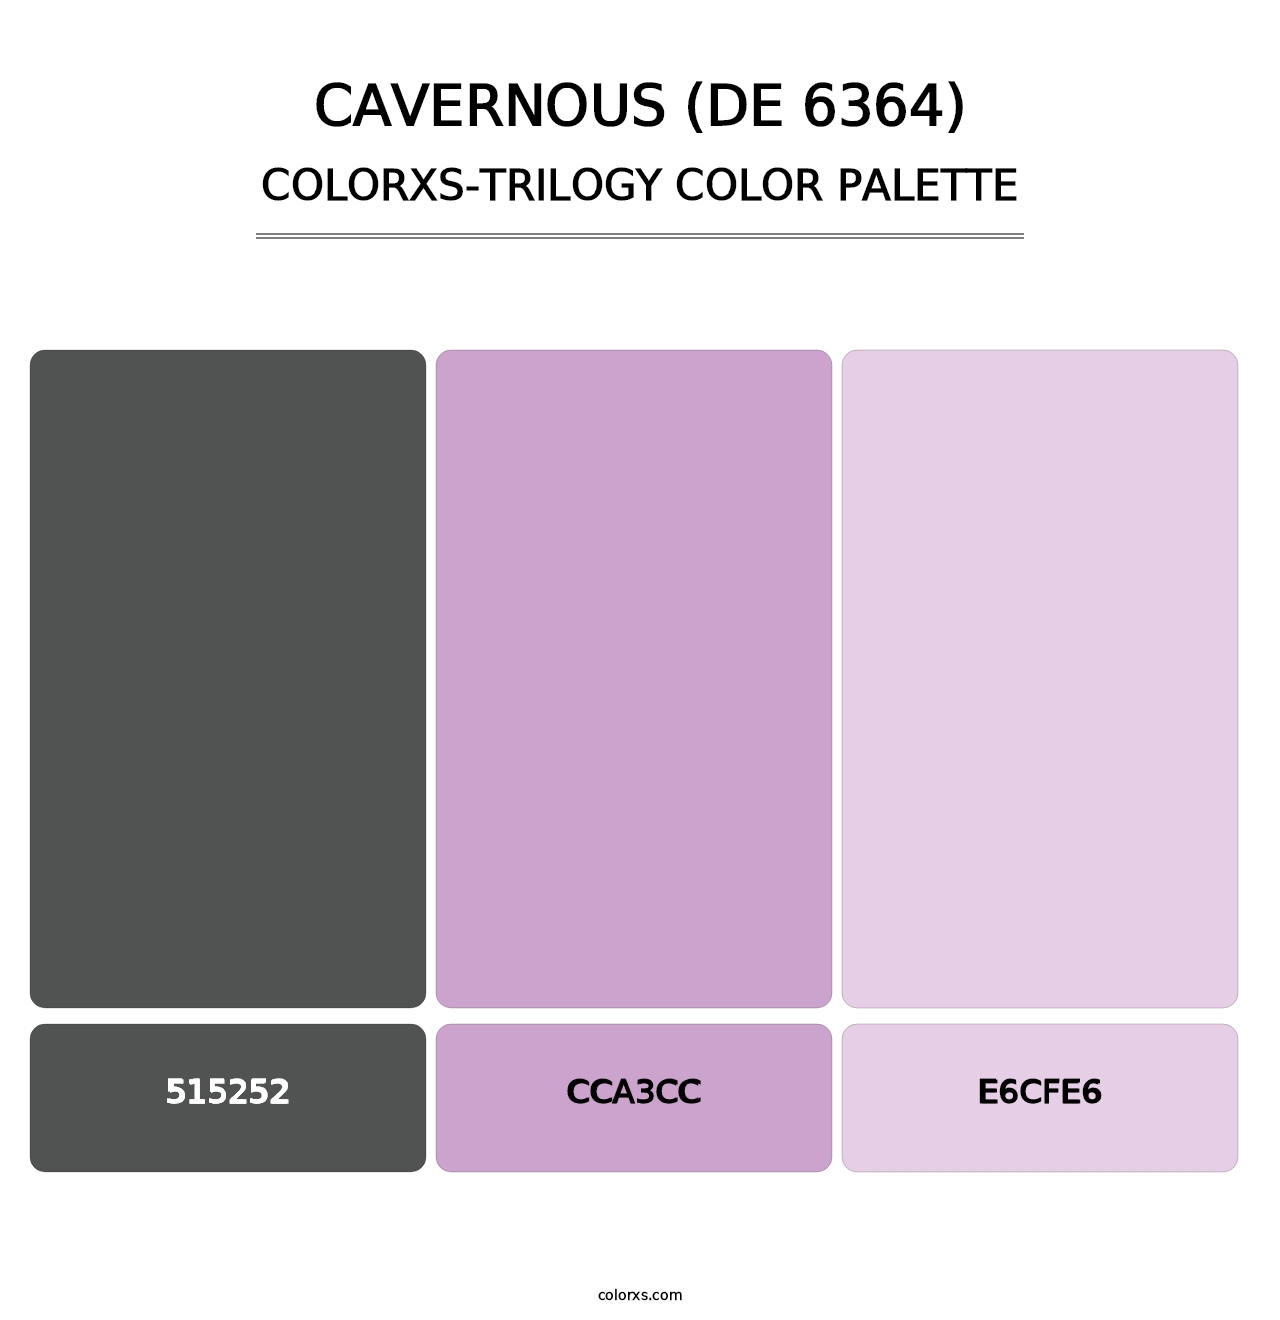 Cavernous (DE 6364) - Colorxs Trilogy Palette